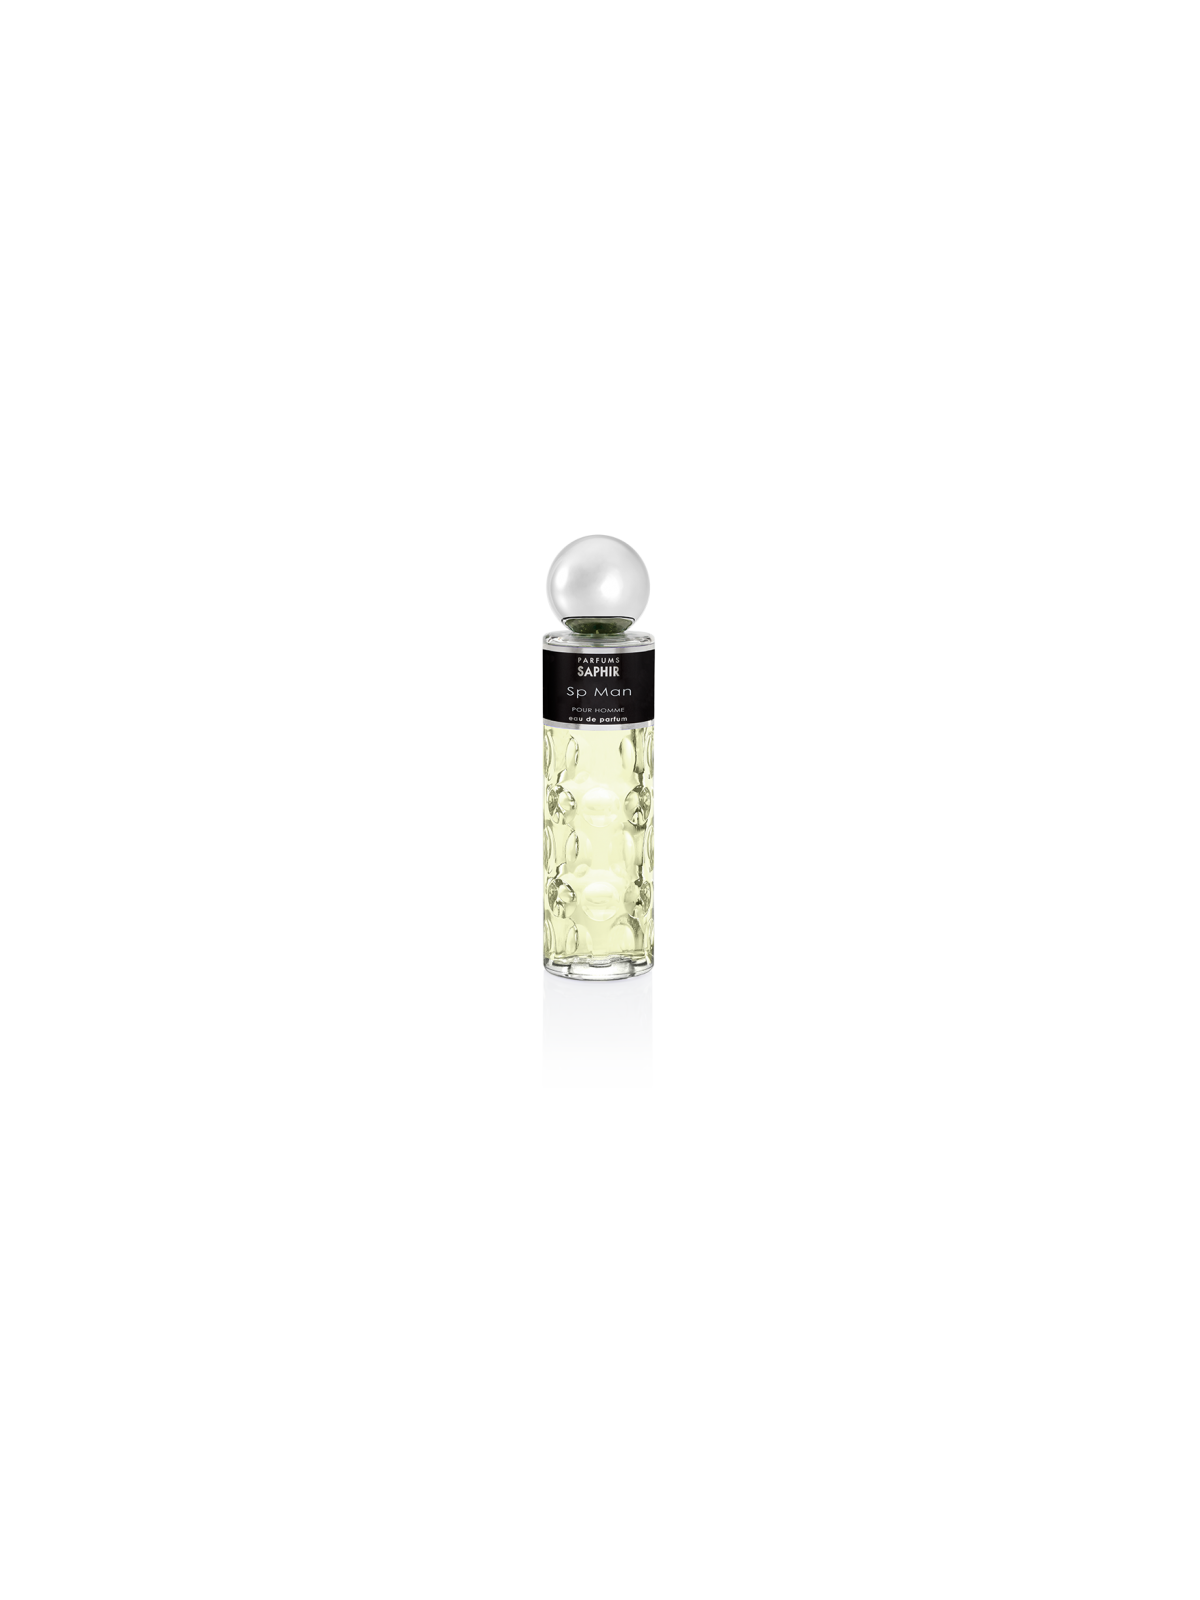 Comprar Perfume Saphir SP Man 200ML. en Perfumes para hombre por sólo 13,90 € o un precio específico de 13,90 € en Thalie Care